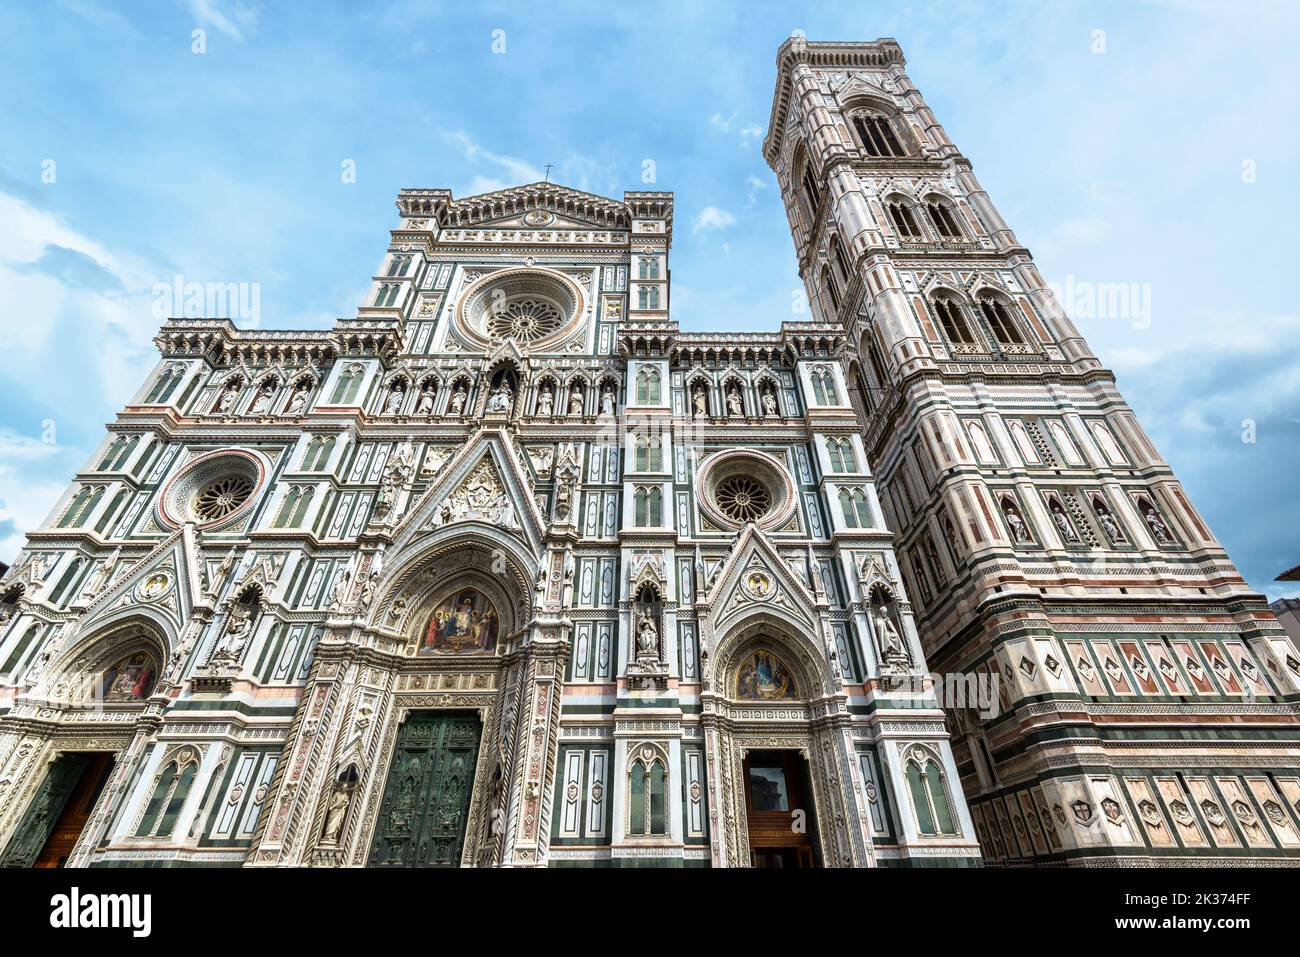 Duomo ou basilique de Santa Maria del Fiore et ciel, Florence, Italie. La vieille cathédrale Sainte-Marie-de-fleurs est le point de repère de Florence. Thème de R. Orné Banque D'Images